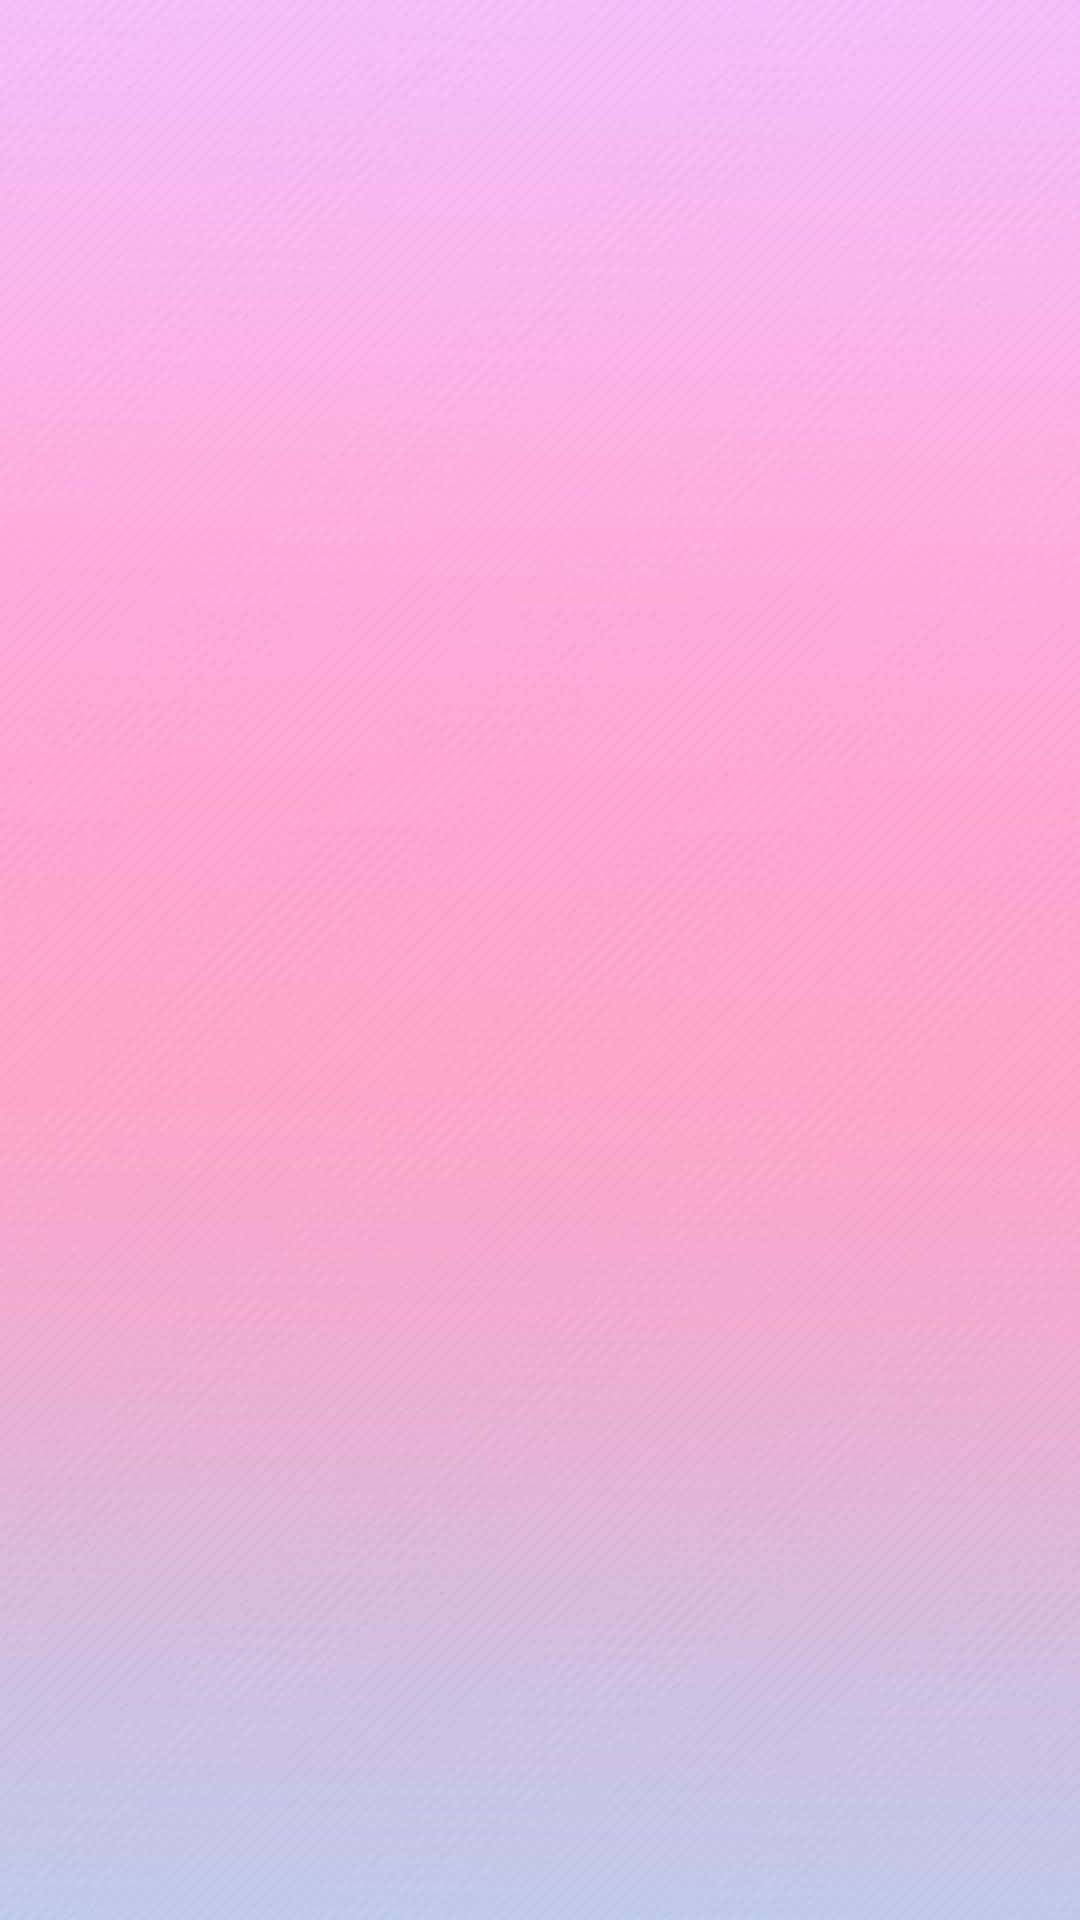 Pink Gradient Background 1242 X 2208